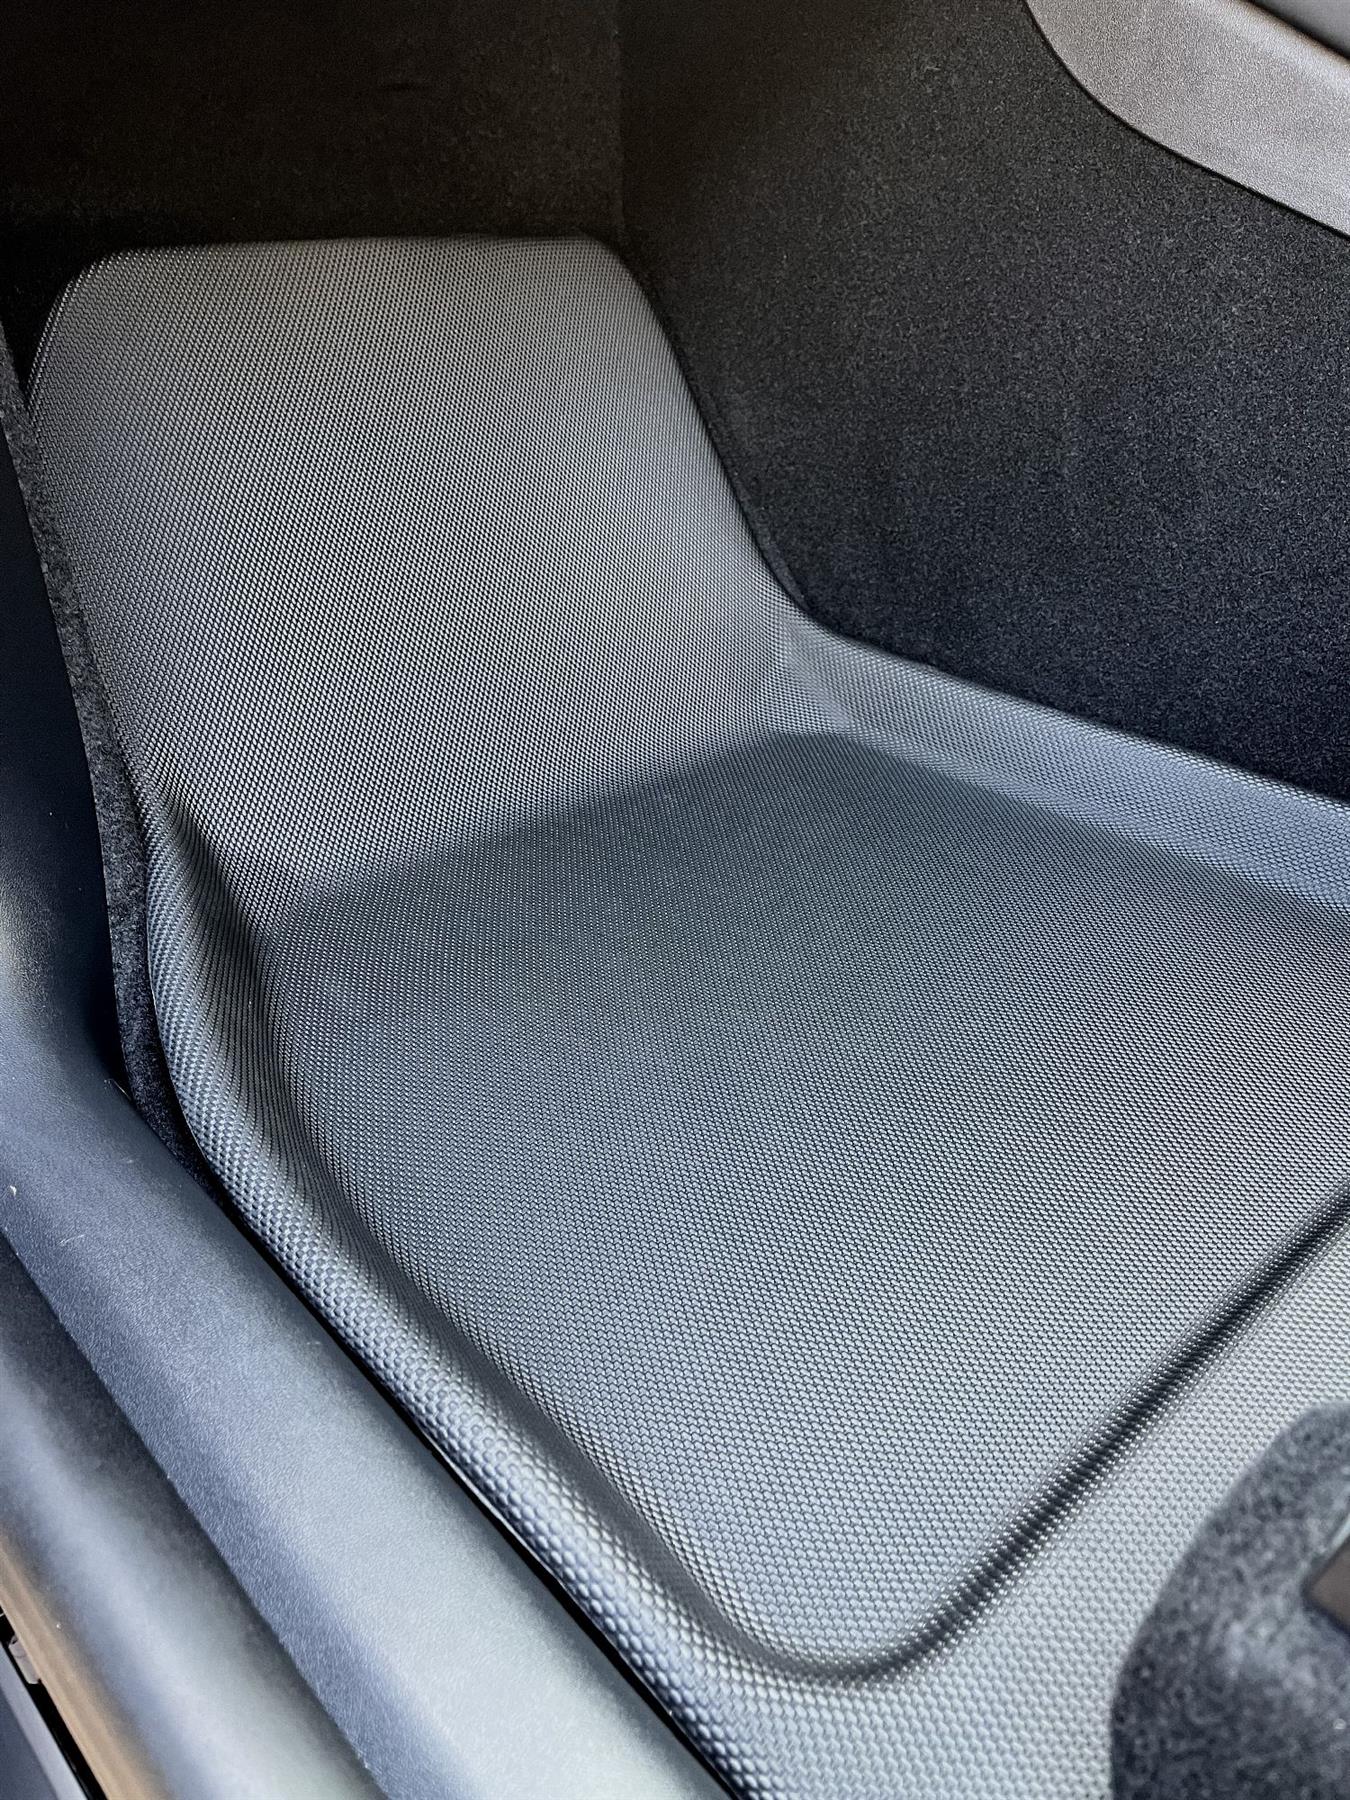 4-Piece Premium Floor Mat Set For Tesla Model Y